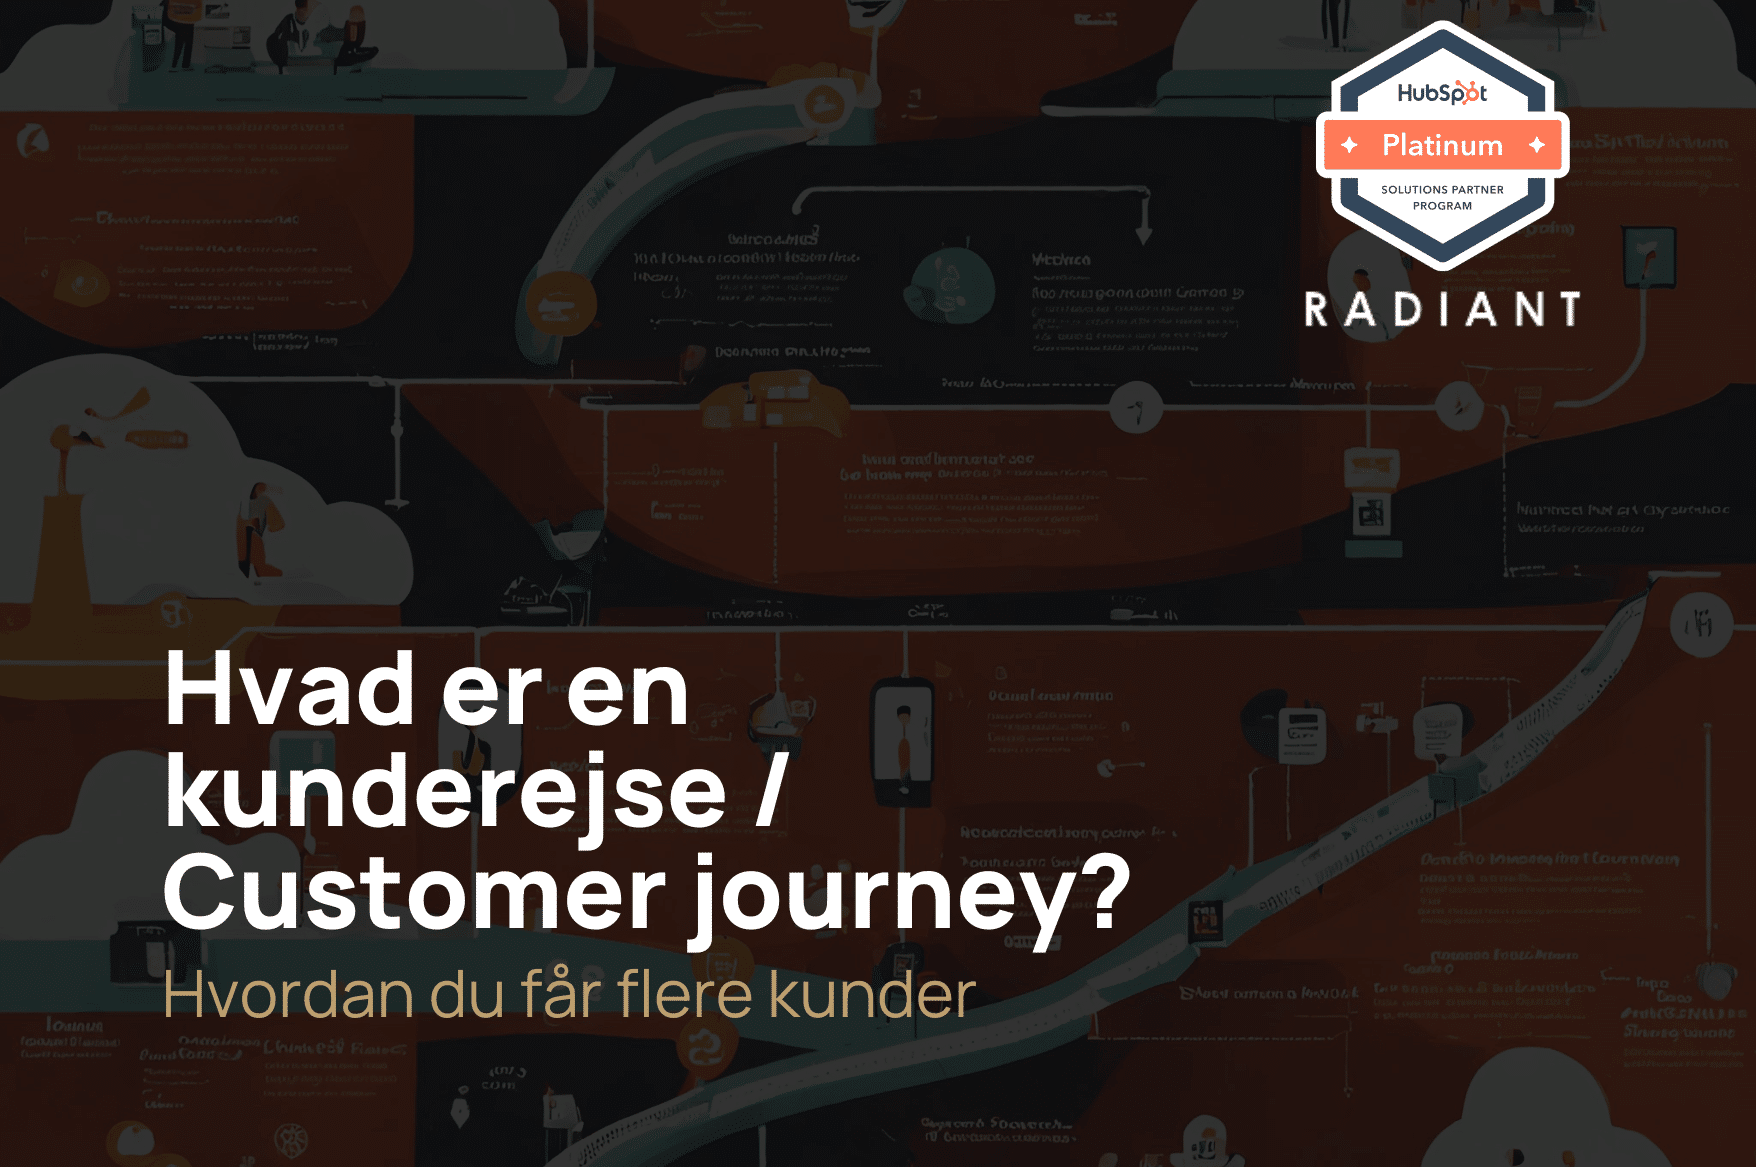 Hvad er en kunderejse / Customer journey?